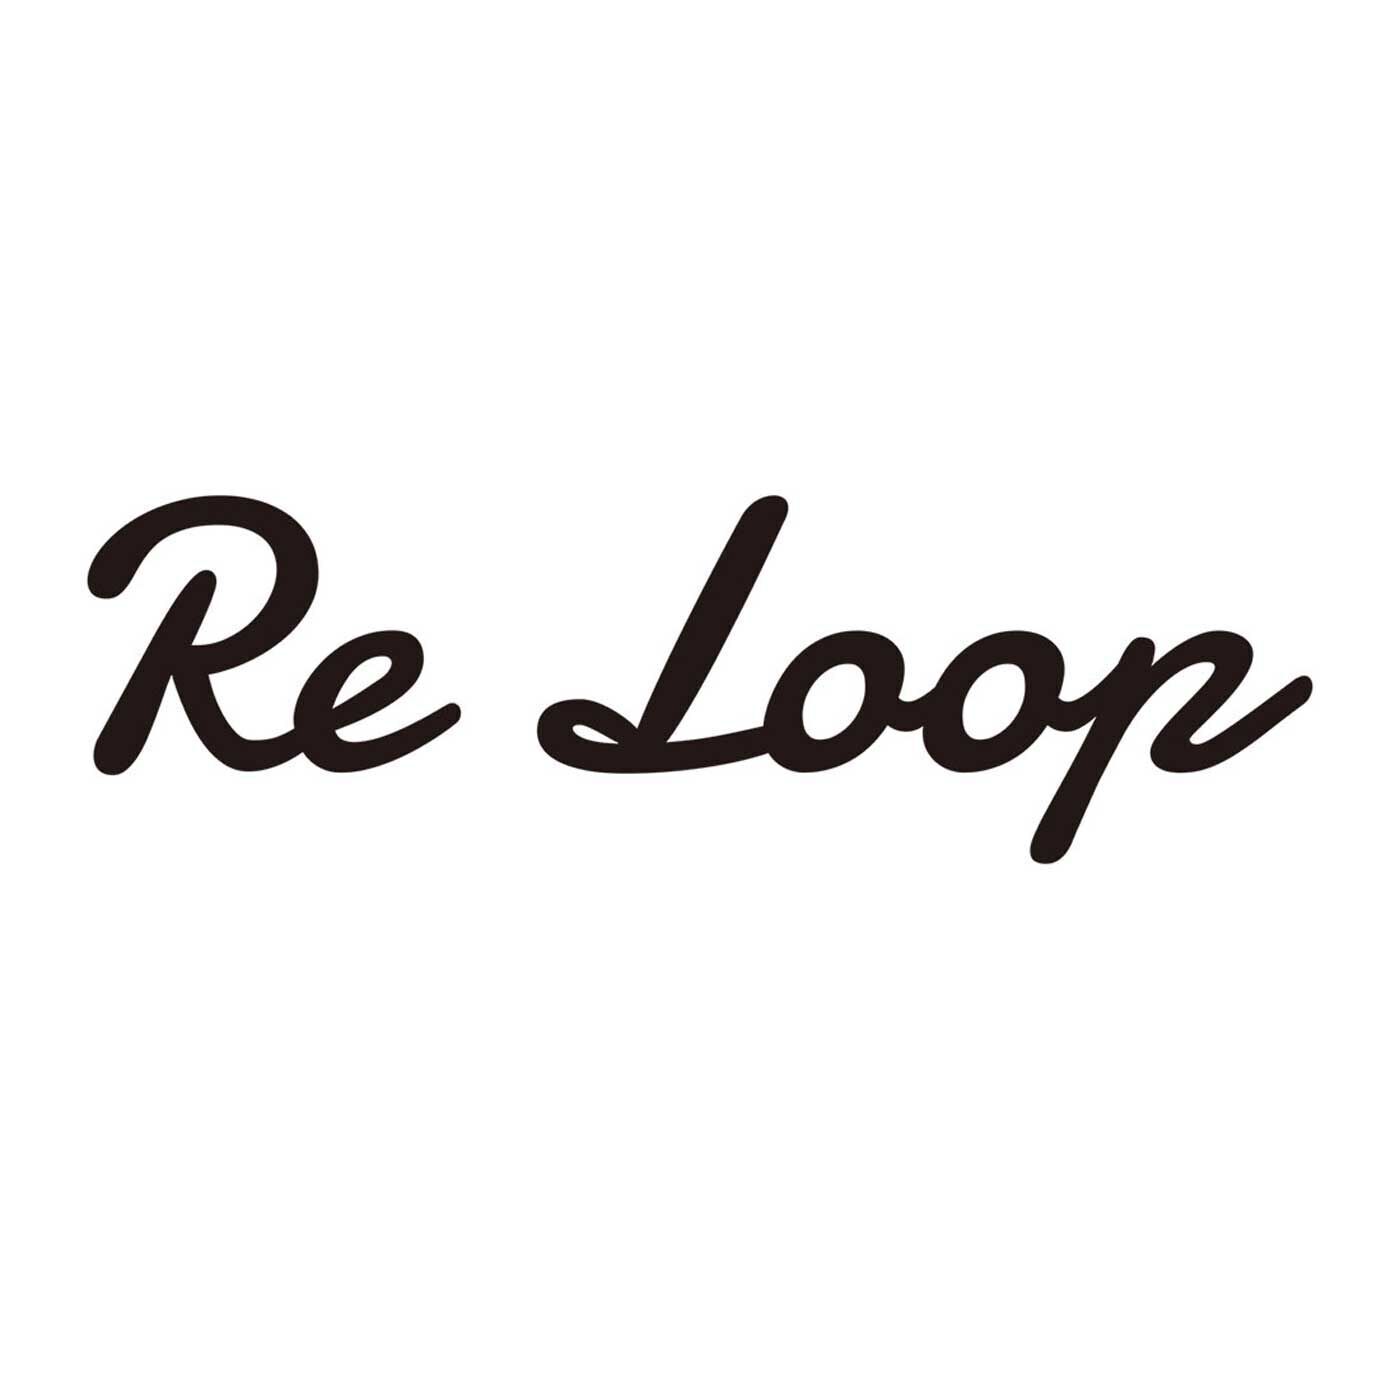 フェリシモの雑貨 Kraso|ReLoop ソックス〈コットンドット・ショート〉の会|【Re Loop】奈良の老舗靴下工場「SOUKI」のブランドです。人と環境にやさしい素材を使い、代々受け継がれてきた技術や知識を次世代に引き継ぐことを使命に生まれました。自然とつながる。人とつながる。心とつながる。授かった自然と知恵に敬意を。靴下の産地、奈良県の広陵町には靴下に関する受け継がれた技術と、経験、知識がたくさんあります。それらの技術を後世へ持続可能な形で引き継ぐことは「Re Loop」の 使命でもあります。オーガニックコットンを使い、希少な編み機でていねいに編み上げられたこの靴下は、ちょっぴり特別。それでいて毎日履くのにぴったりの相棒的存在です。